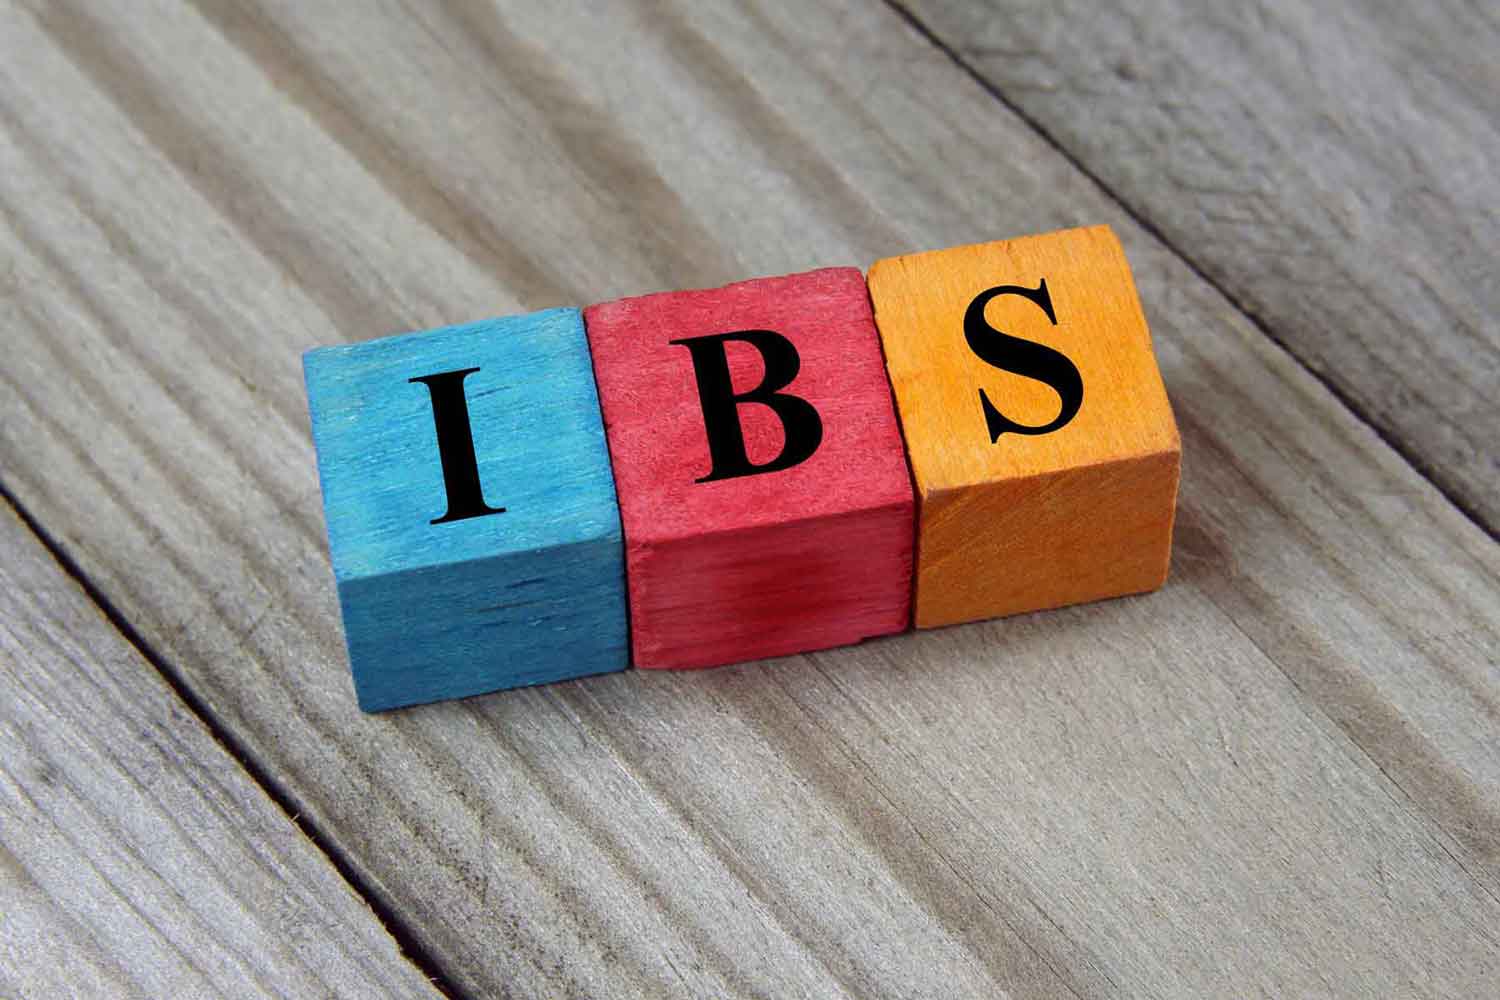 Mi az IBS?